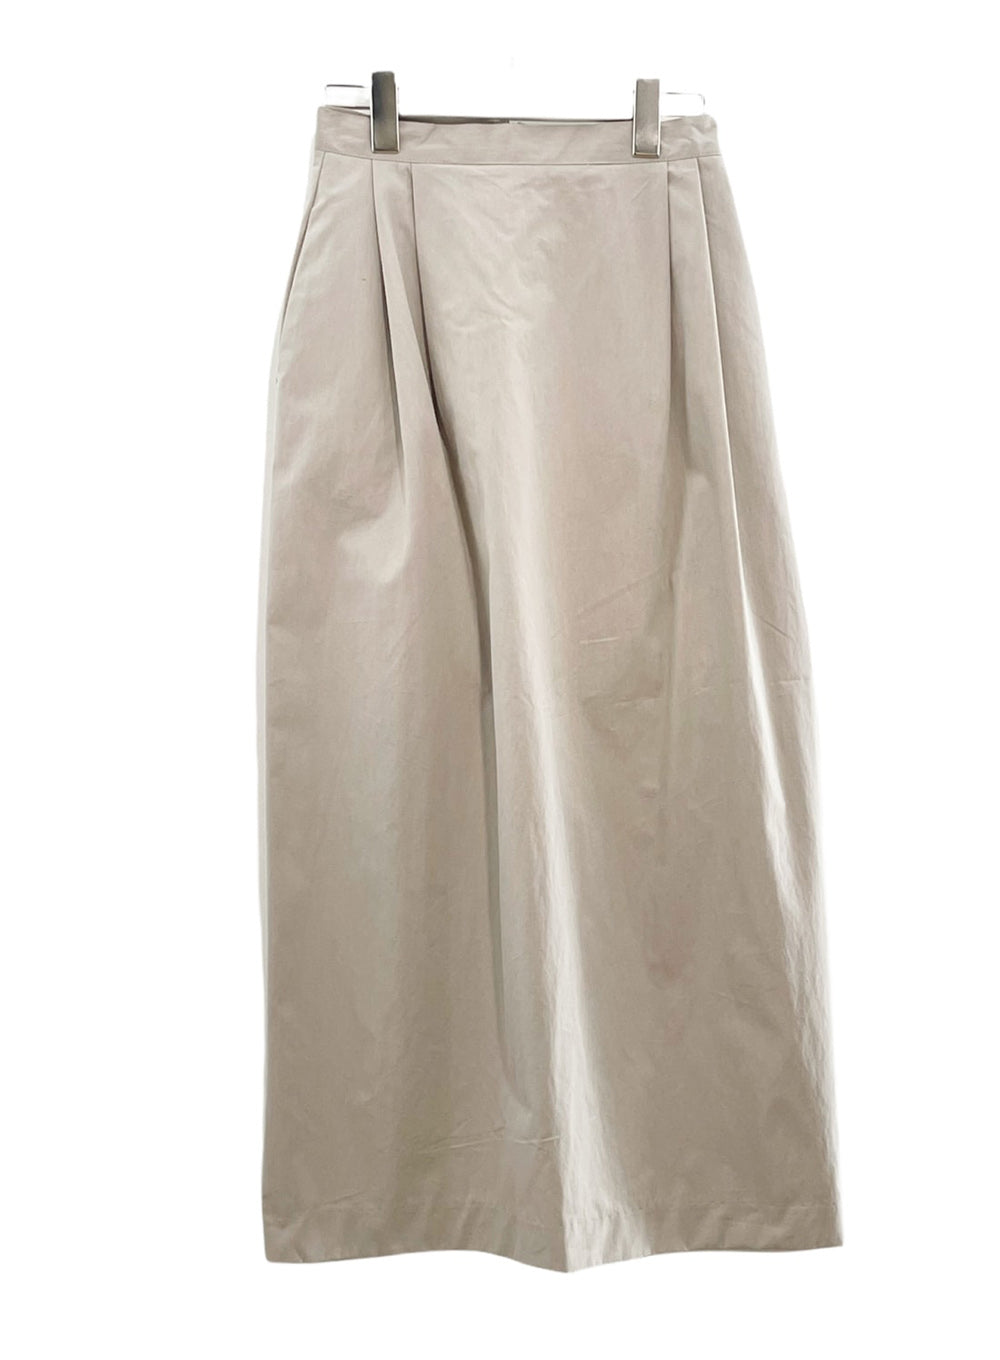 Long Pintuck Skirt #172